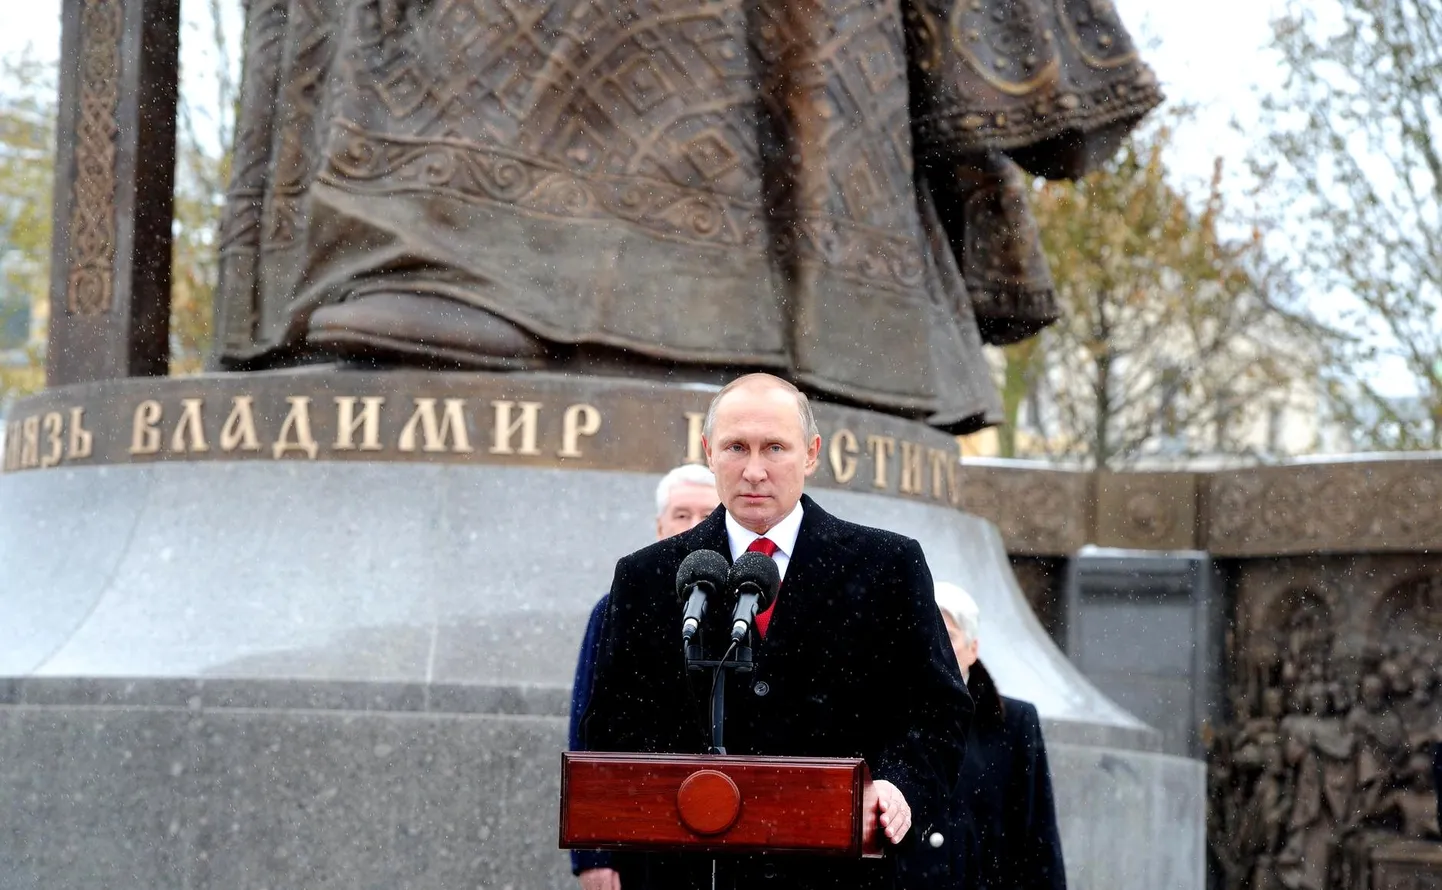 Владимир Путин на Боровицкой площади Москвы открывает памятник князю Владимиру. 4 ноября 2016 года.